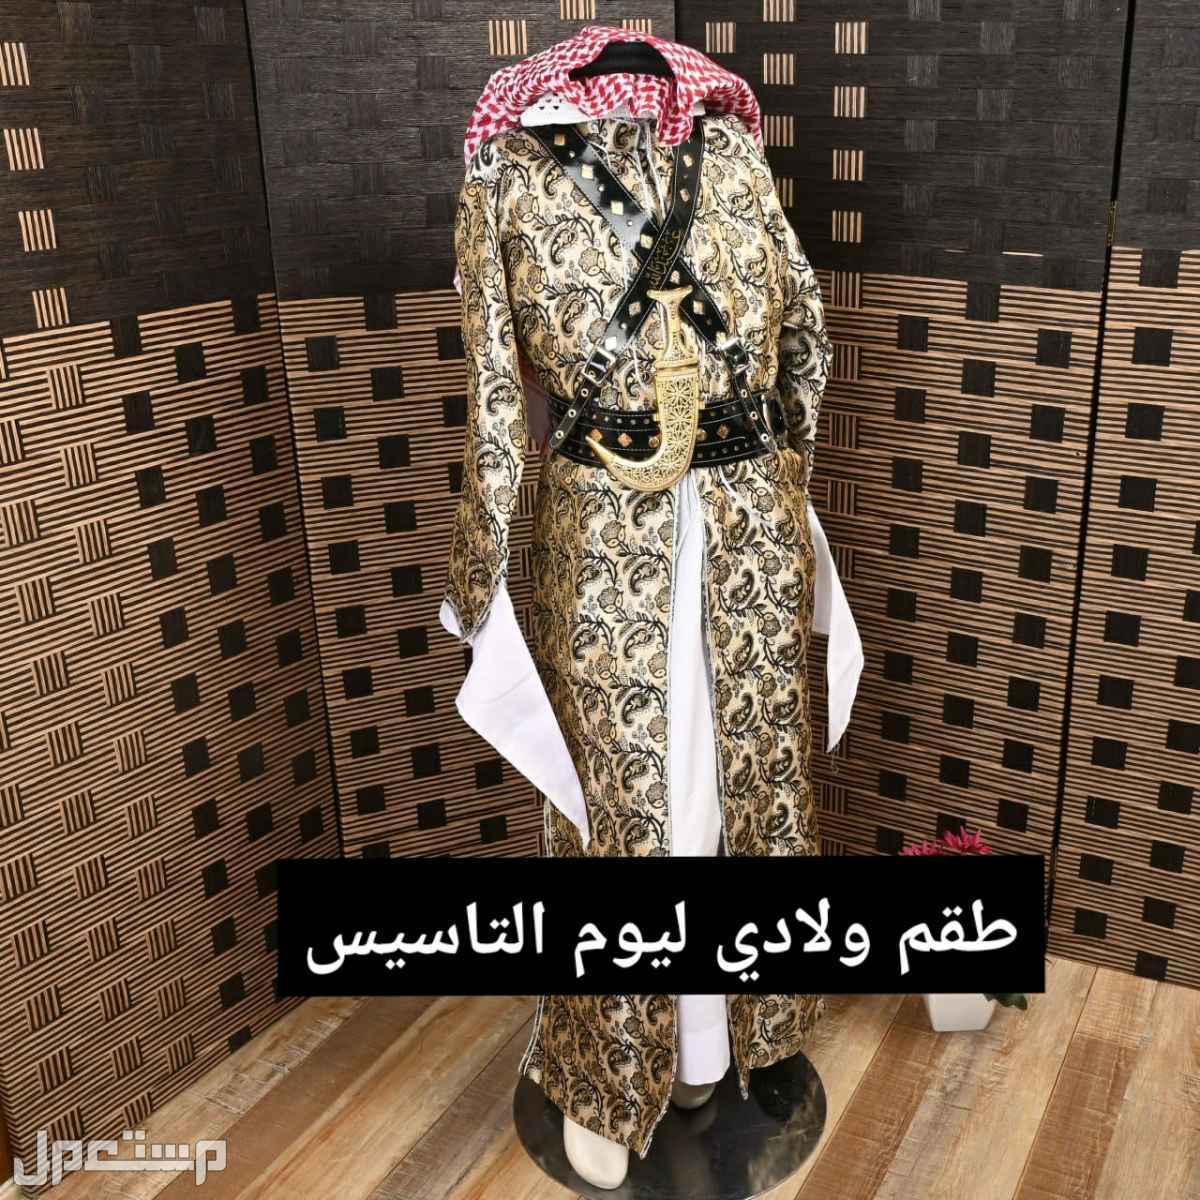 طقم ولادي ليوم التاسيس جنادرية ثوب شماغ حزام خنجر عقال